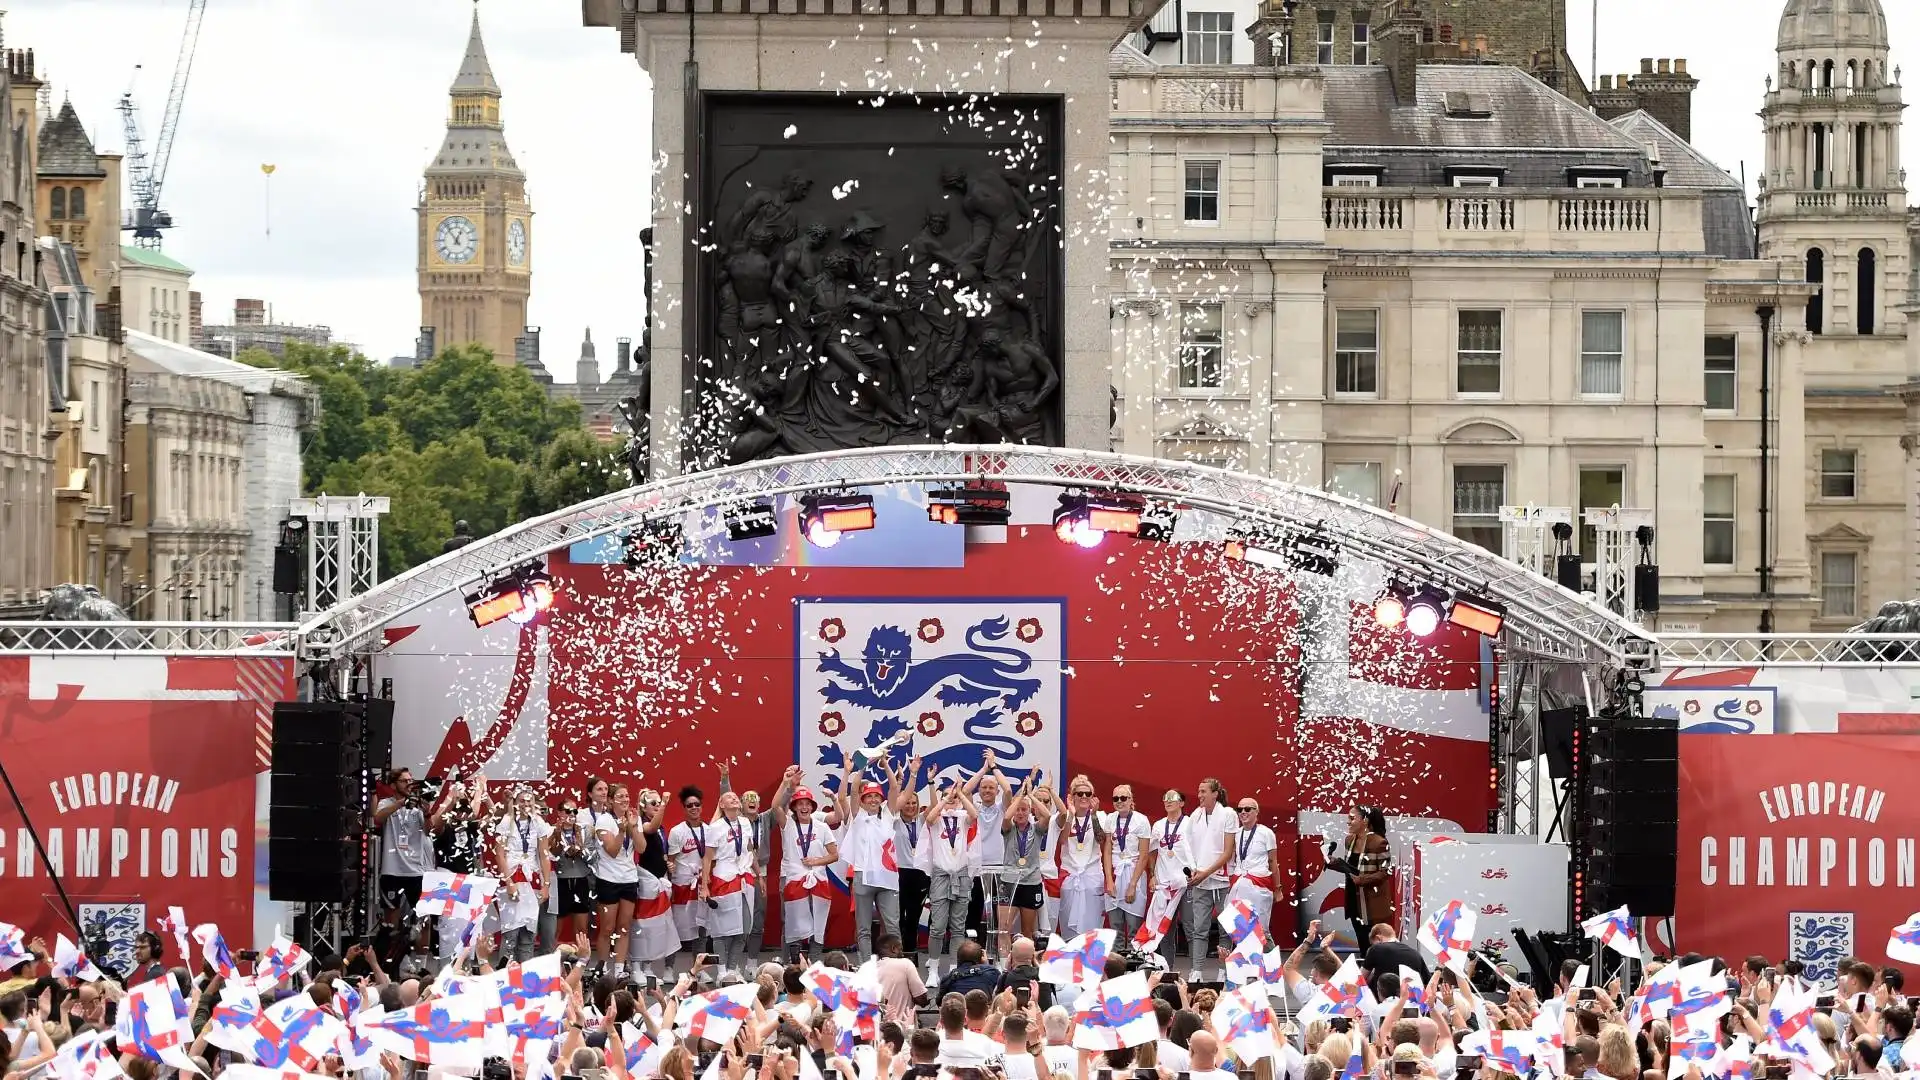 Una folla incredibile ha acclamato le neo campionesse d'Europa, che hanno sollevato il trofeo davanti ai proprio tifosi a Trafalgar Square